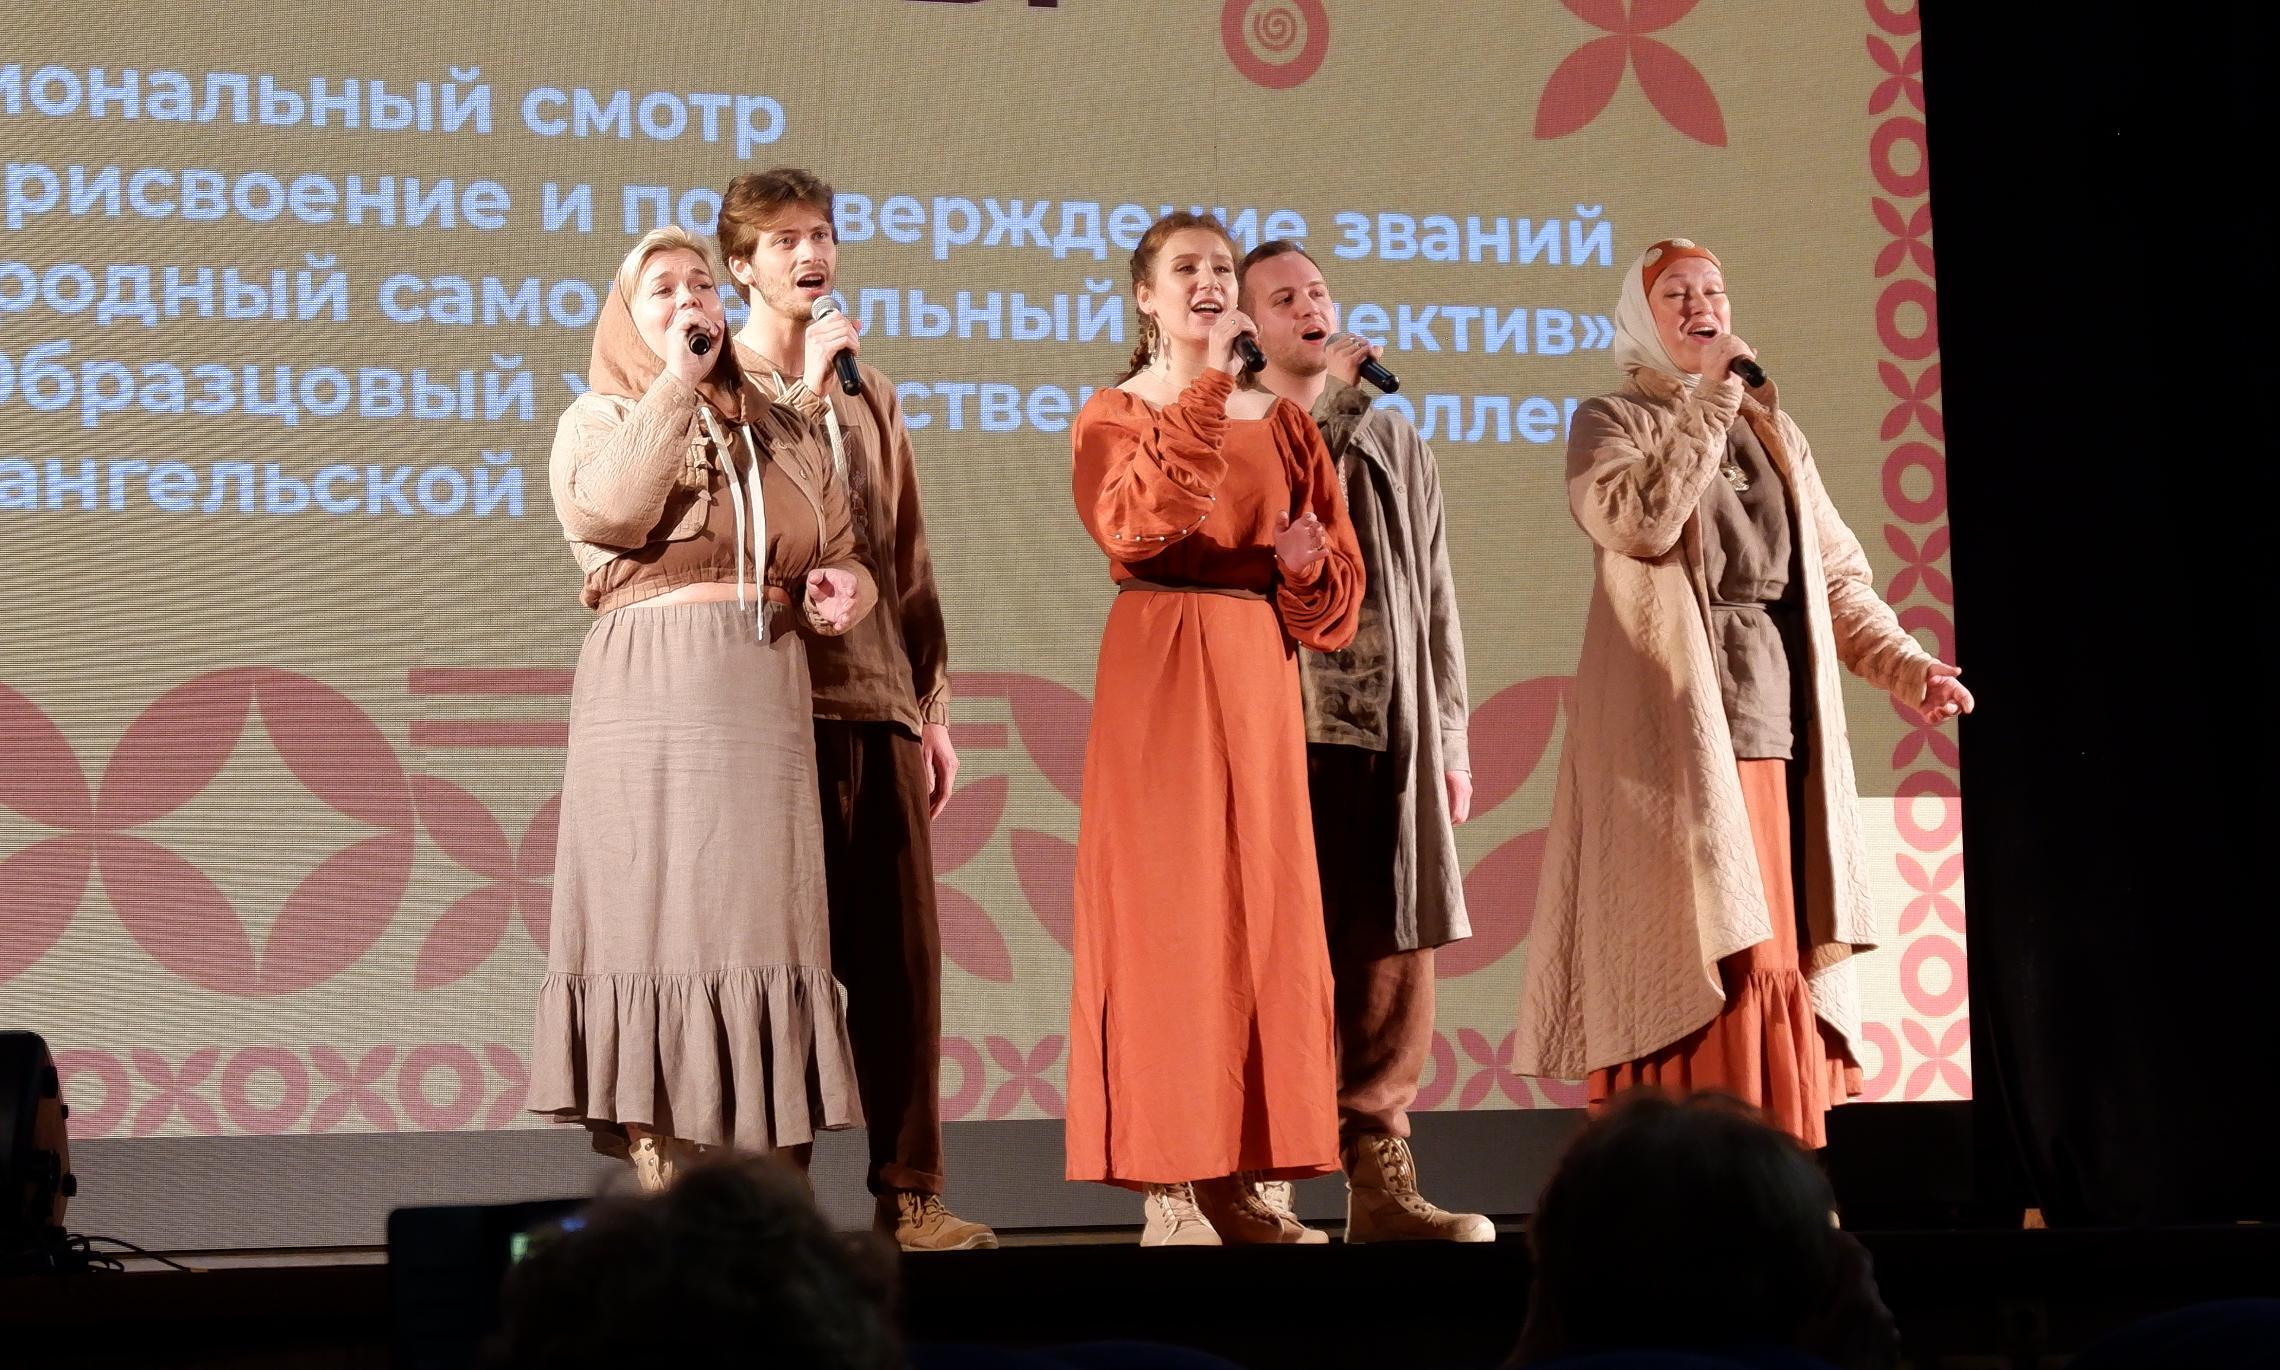 Выступление группы «Прялица и пряники» на концерте для получения статуса «Народный самодеятельный коллектив»